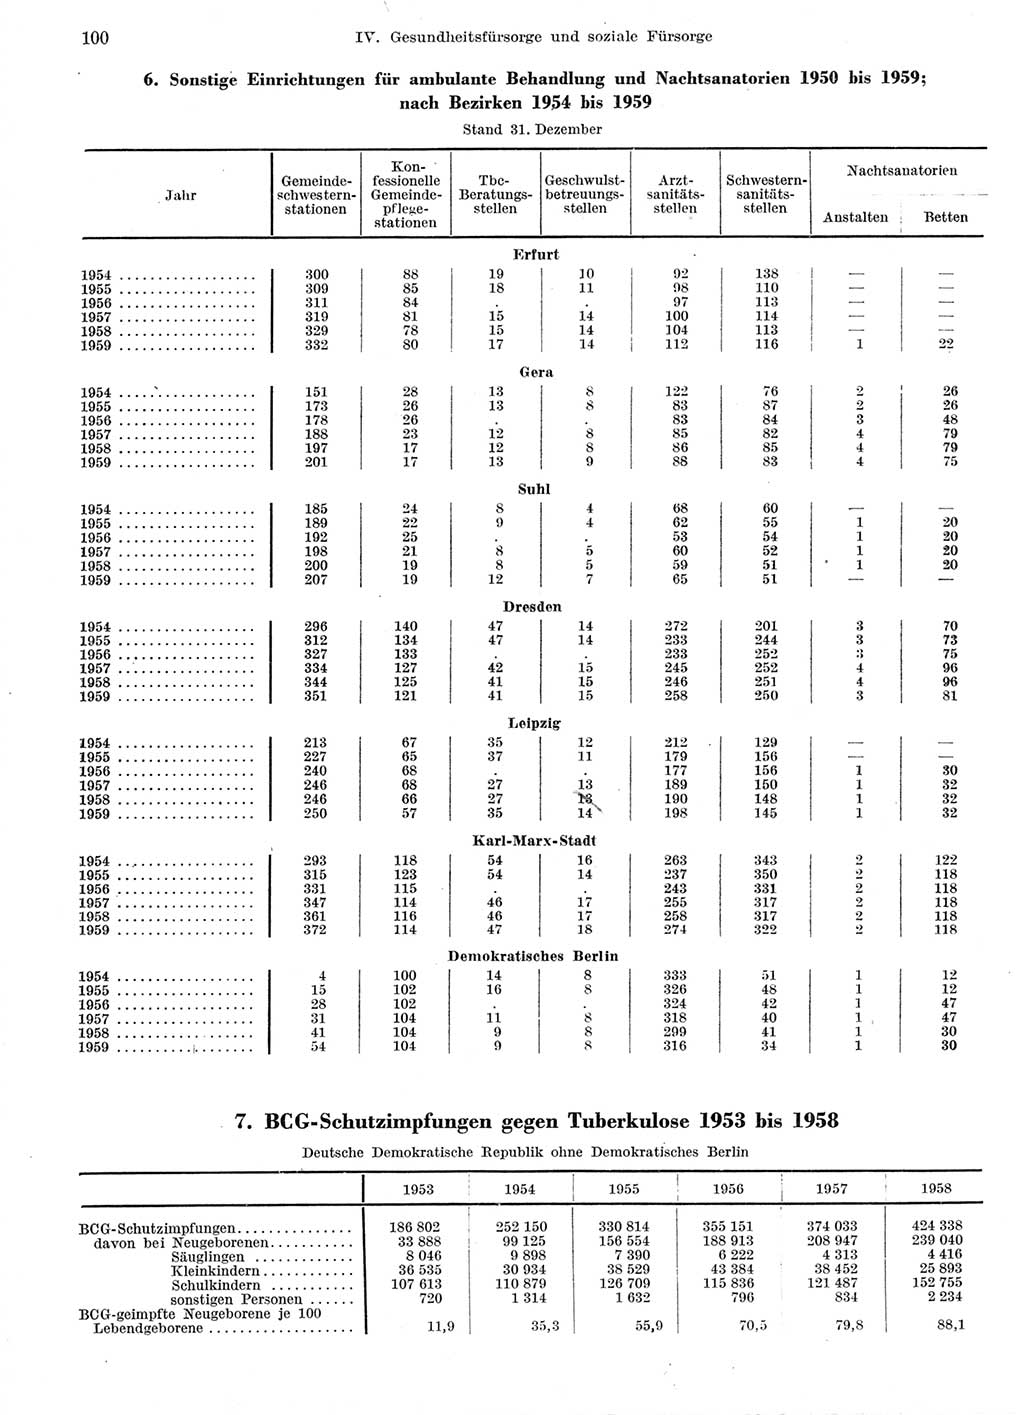 Statistisches Jahrbuch der Deutschen Demokratischen Republik (DDR) 1959, Seite 100 (Stat. Jb. DDR 1959, S. 100)